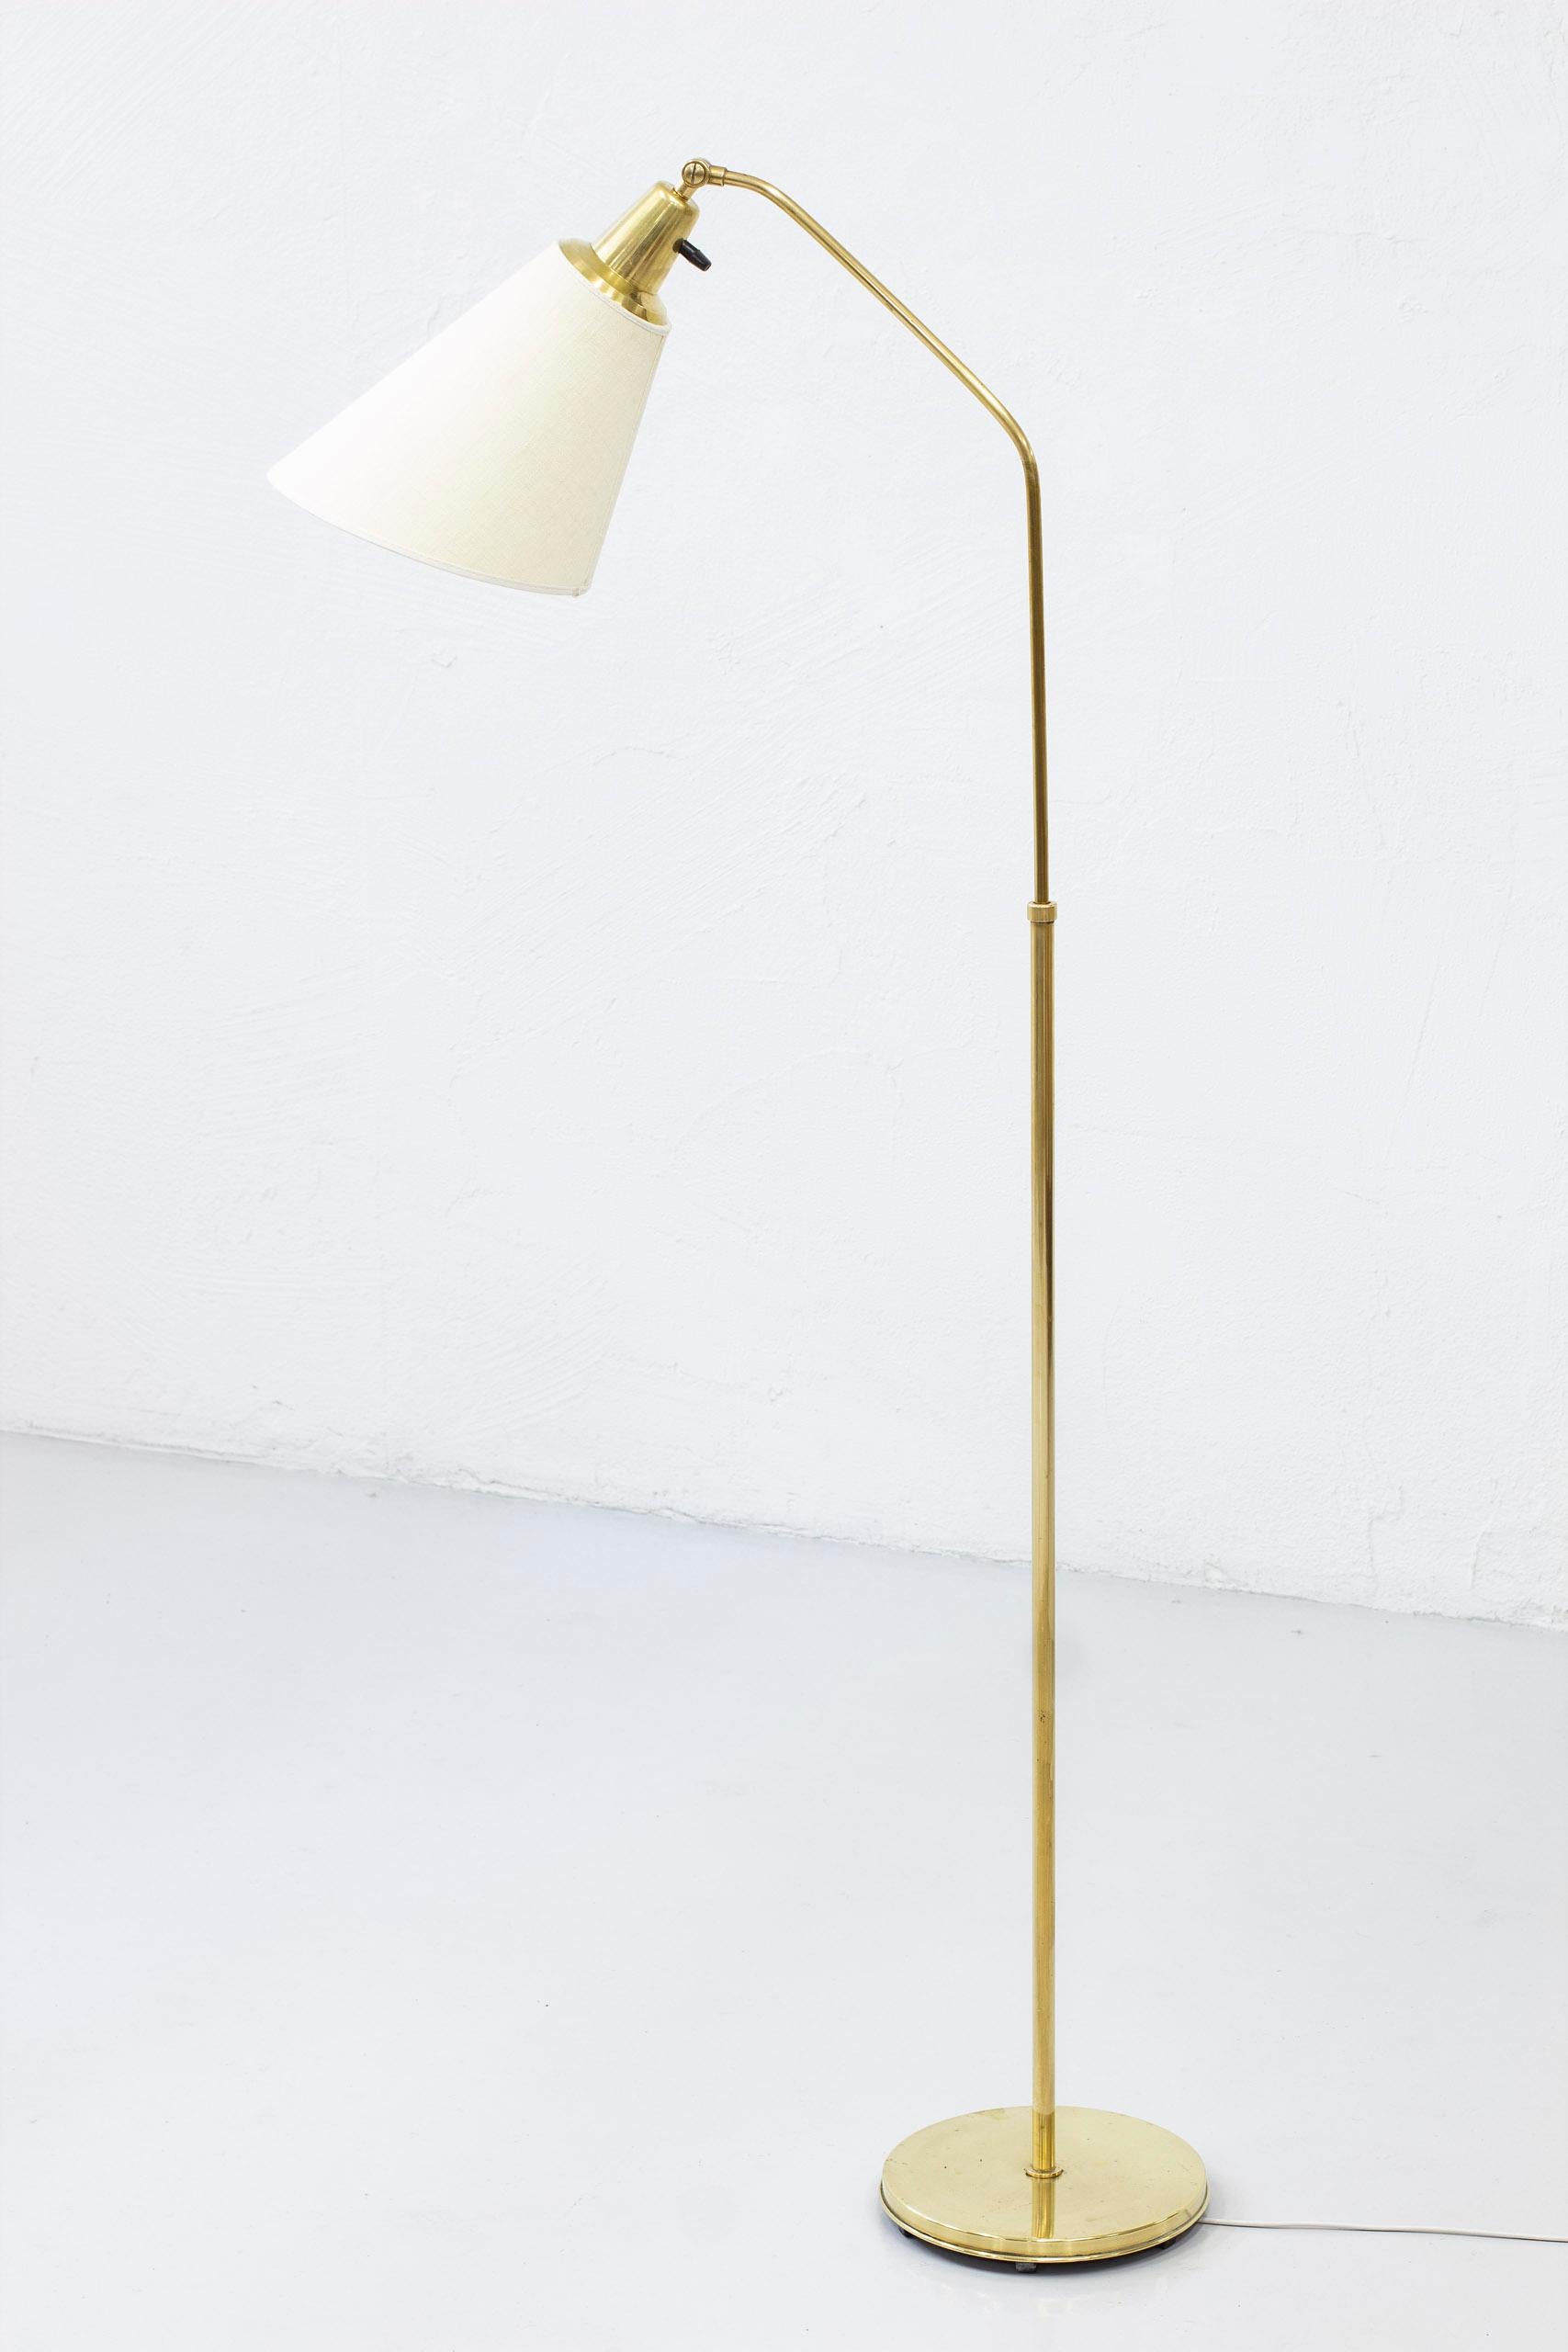 Scandinavian Modern Brass Floor Lamp by Alf Svensson for Bergboms, Sweden, 1940s